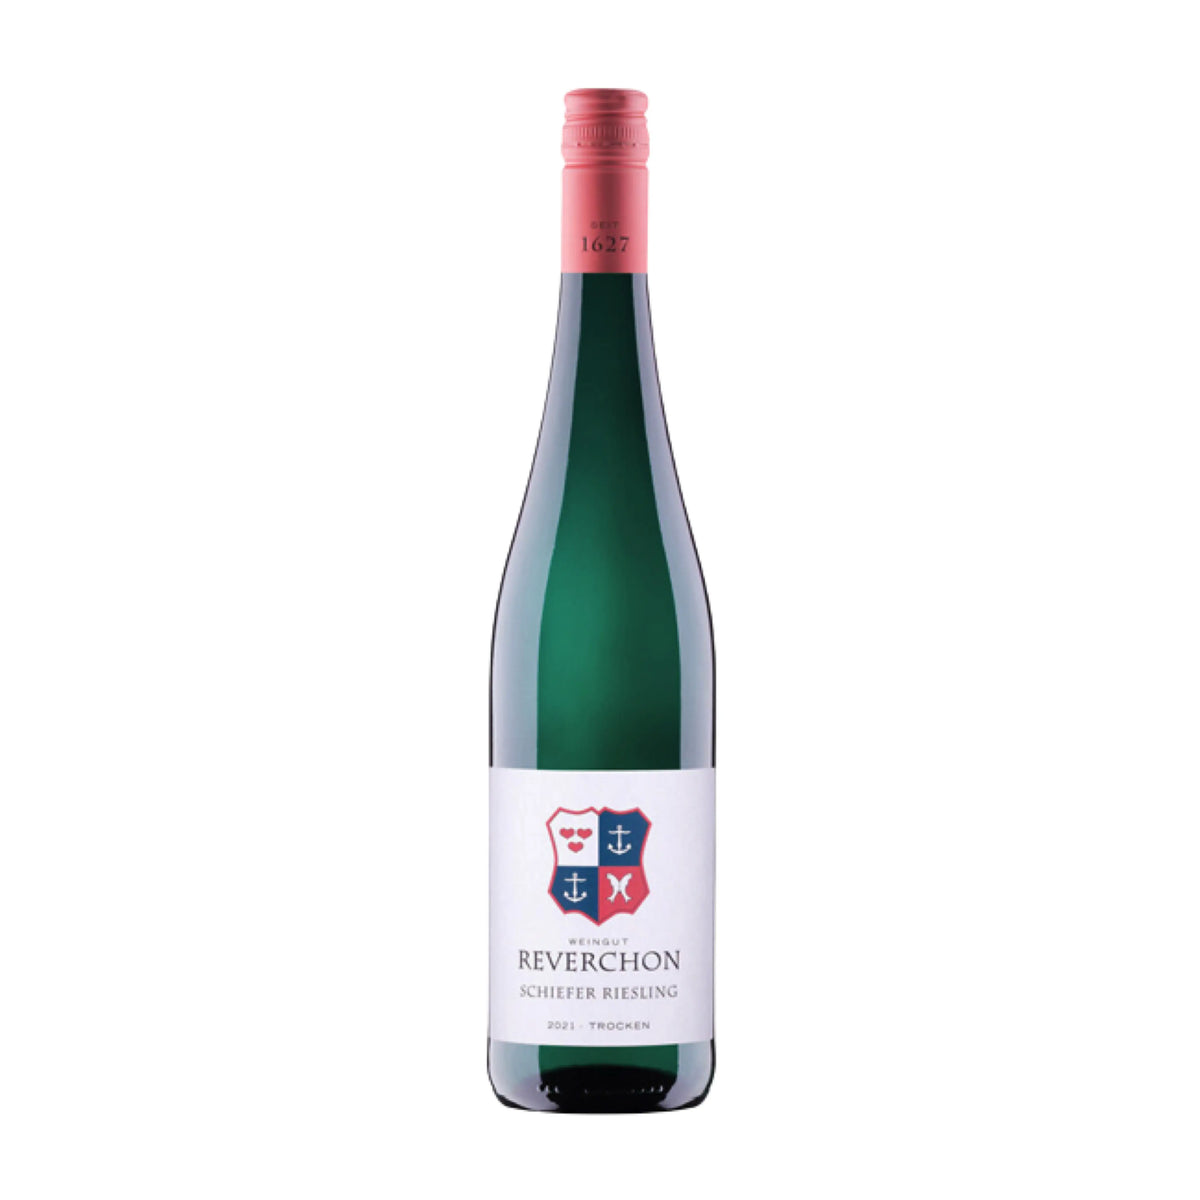 Reverchon-Weißwein-Riesling-Deutschland-Mosel-2021 Schiefer Riesling-WINECOM